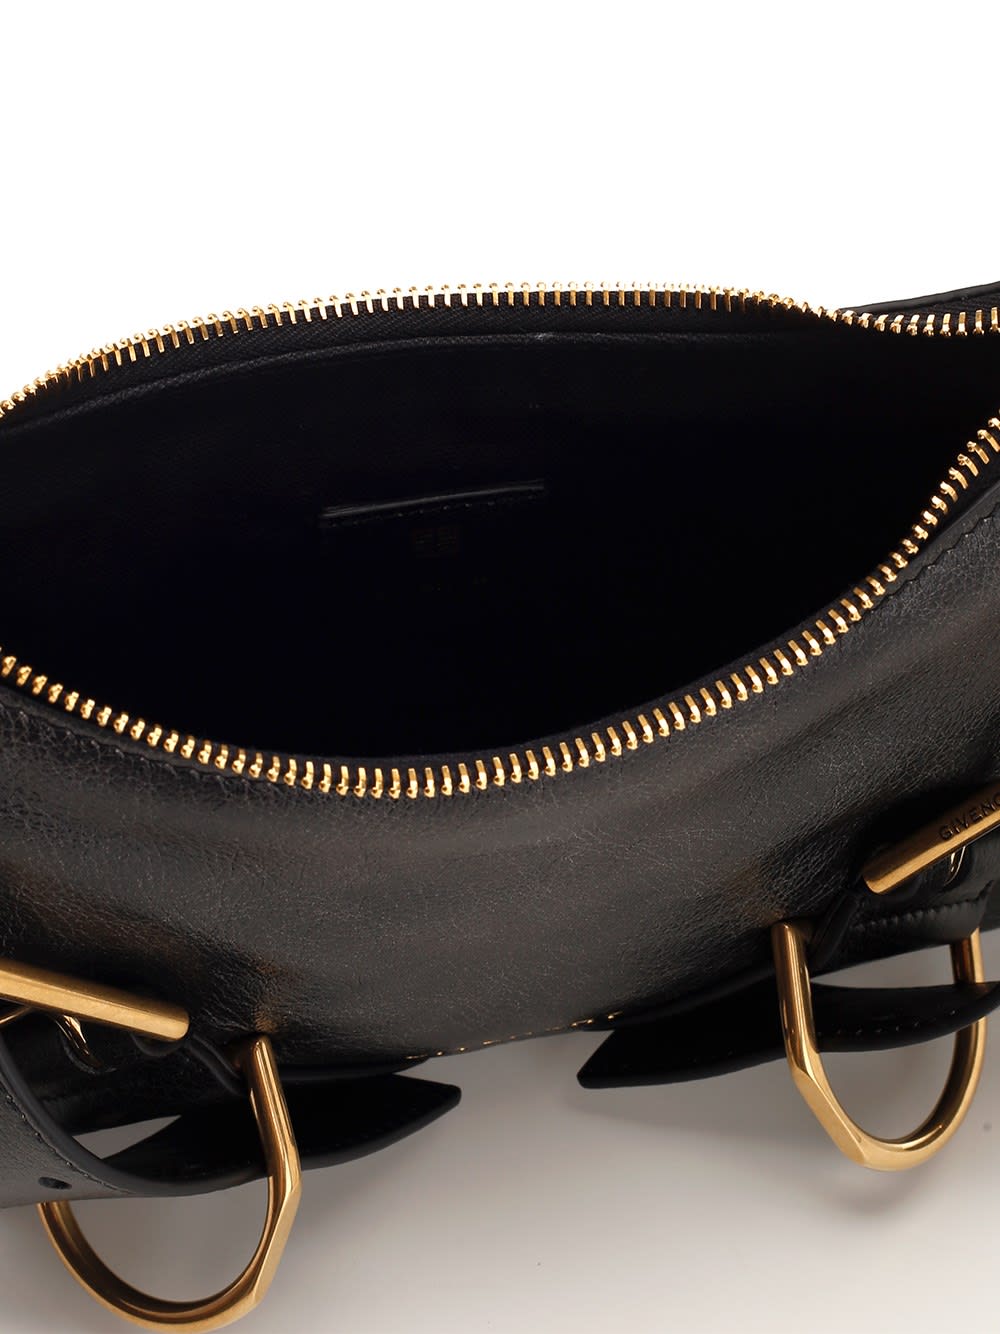 Shop Givenchy Voyou Shoulder Bag In Black